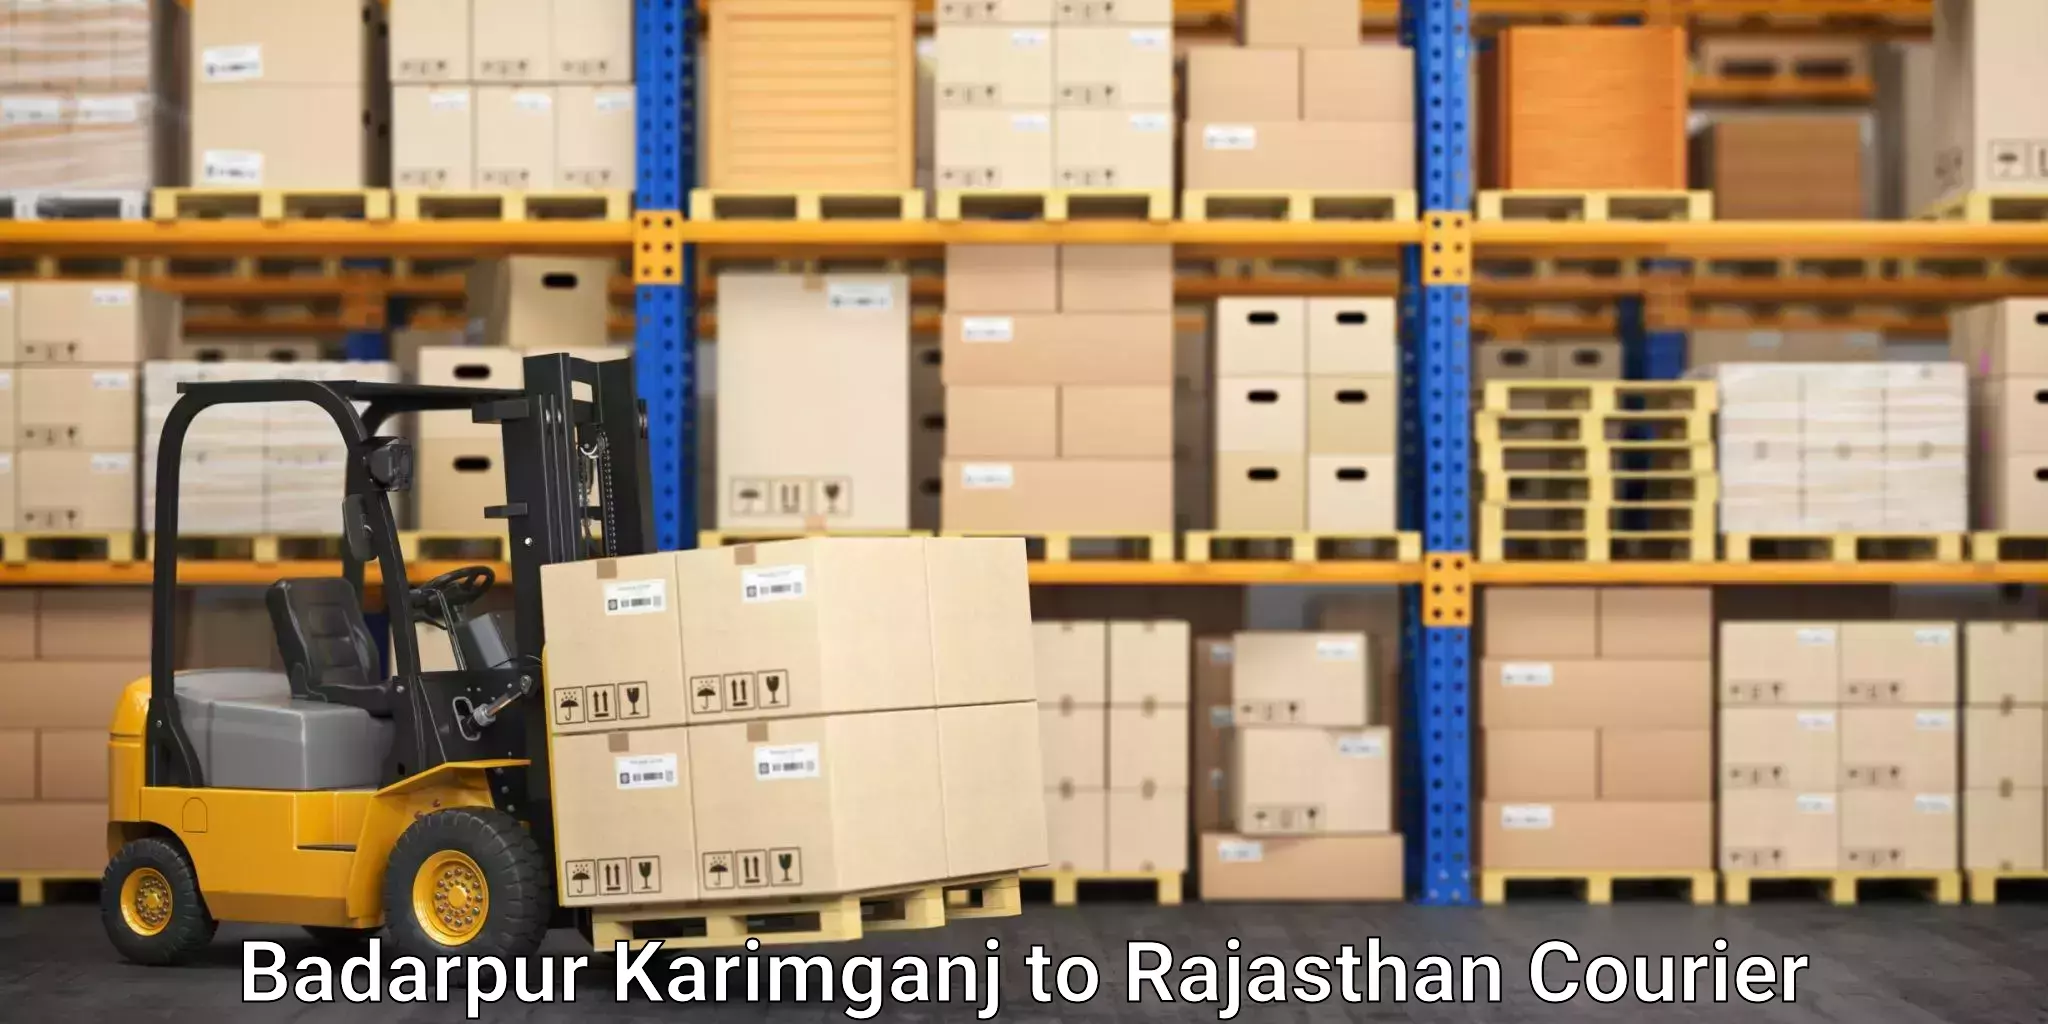 Advanced shipping network Badarpur Karimganj to Bharatpur